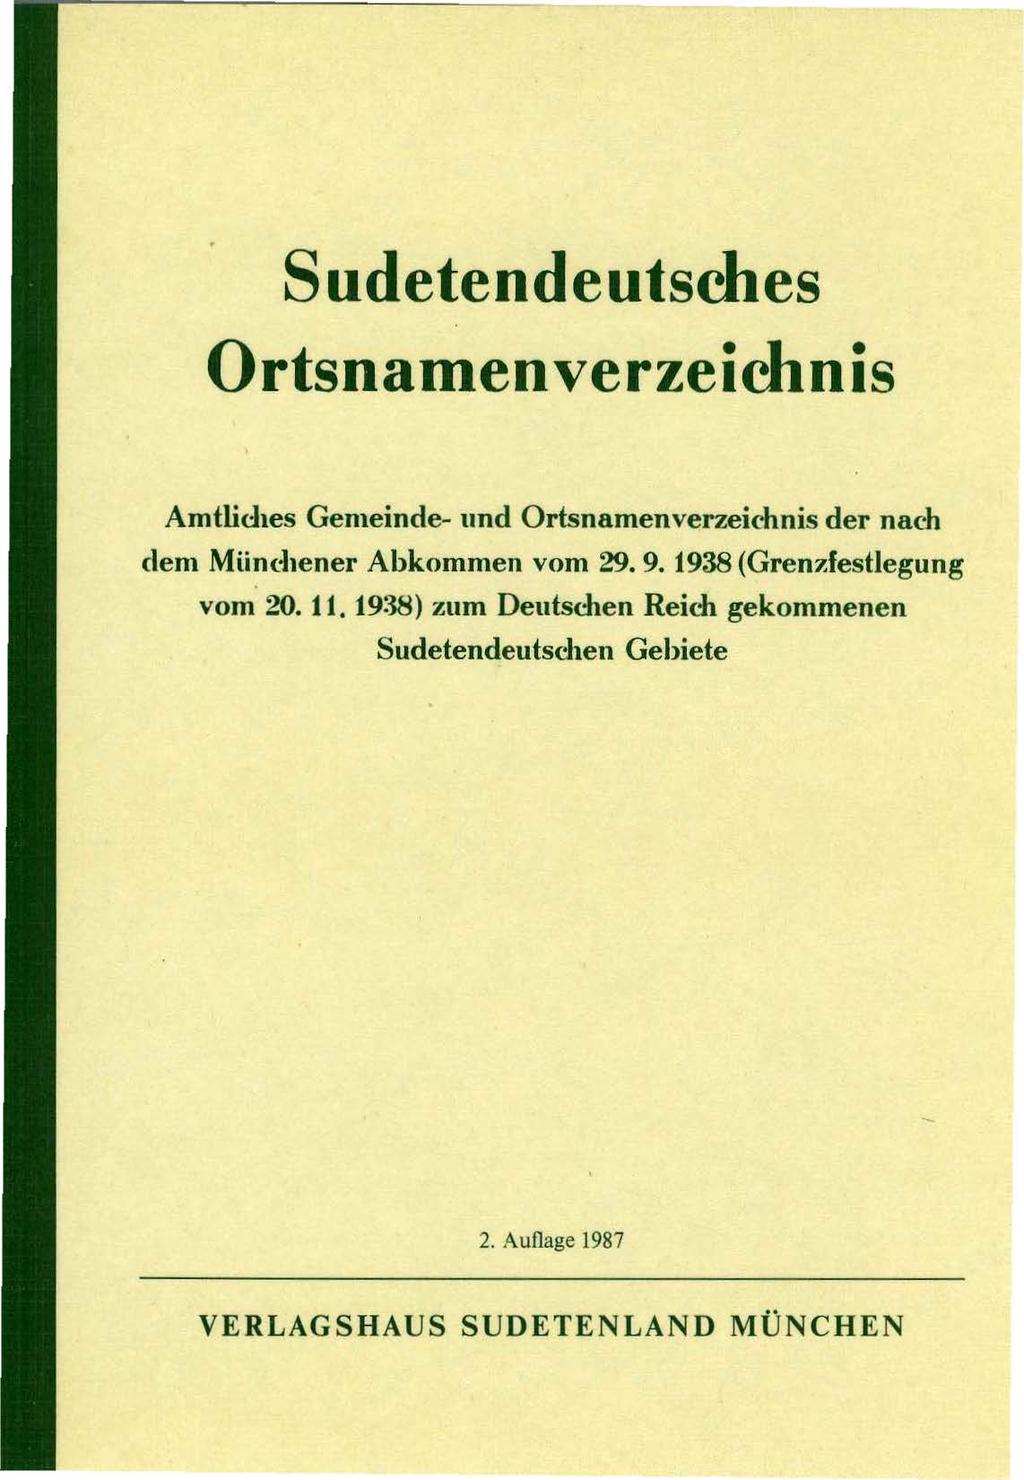 Sudetendeutsches Ortsnamenverzeichnis Amtlid1es Gemeinde- und Ortsnamenverzeidmis der nach dem Miind1ener Abkommen vom 29. 9.